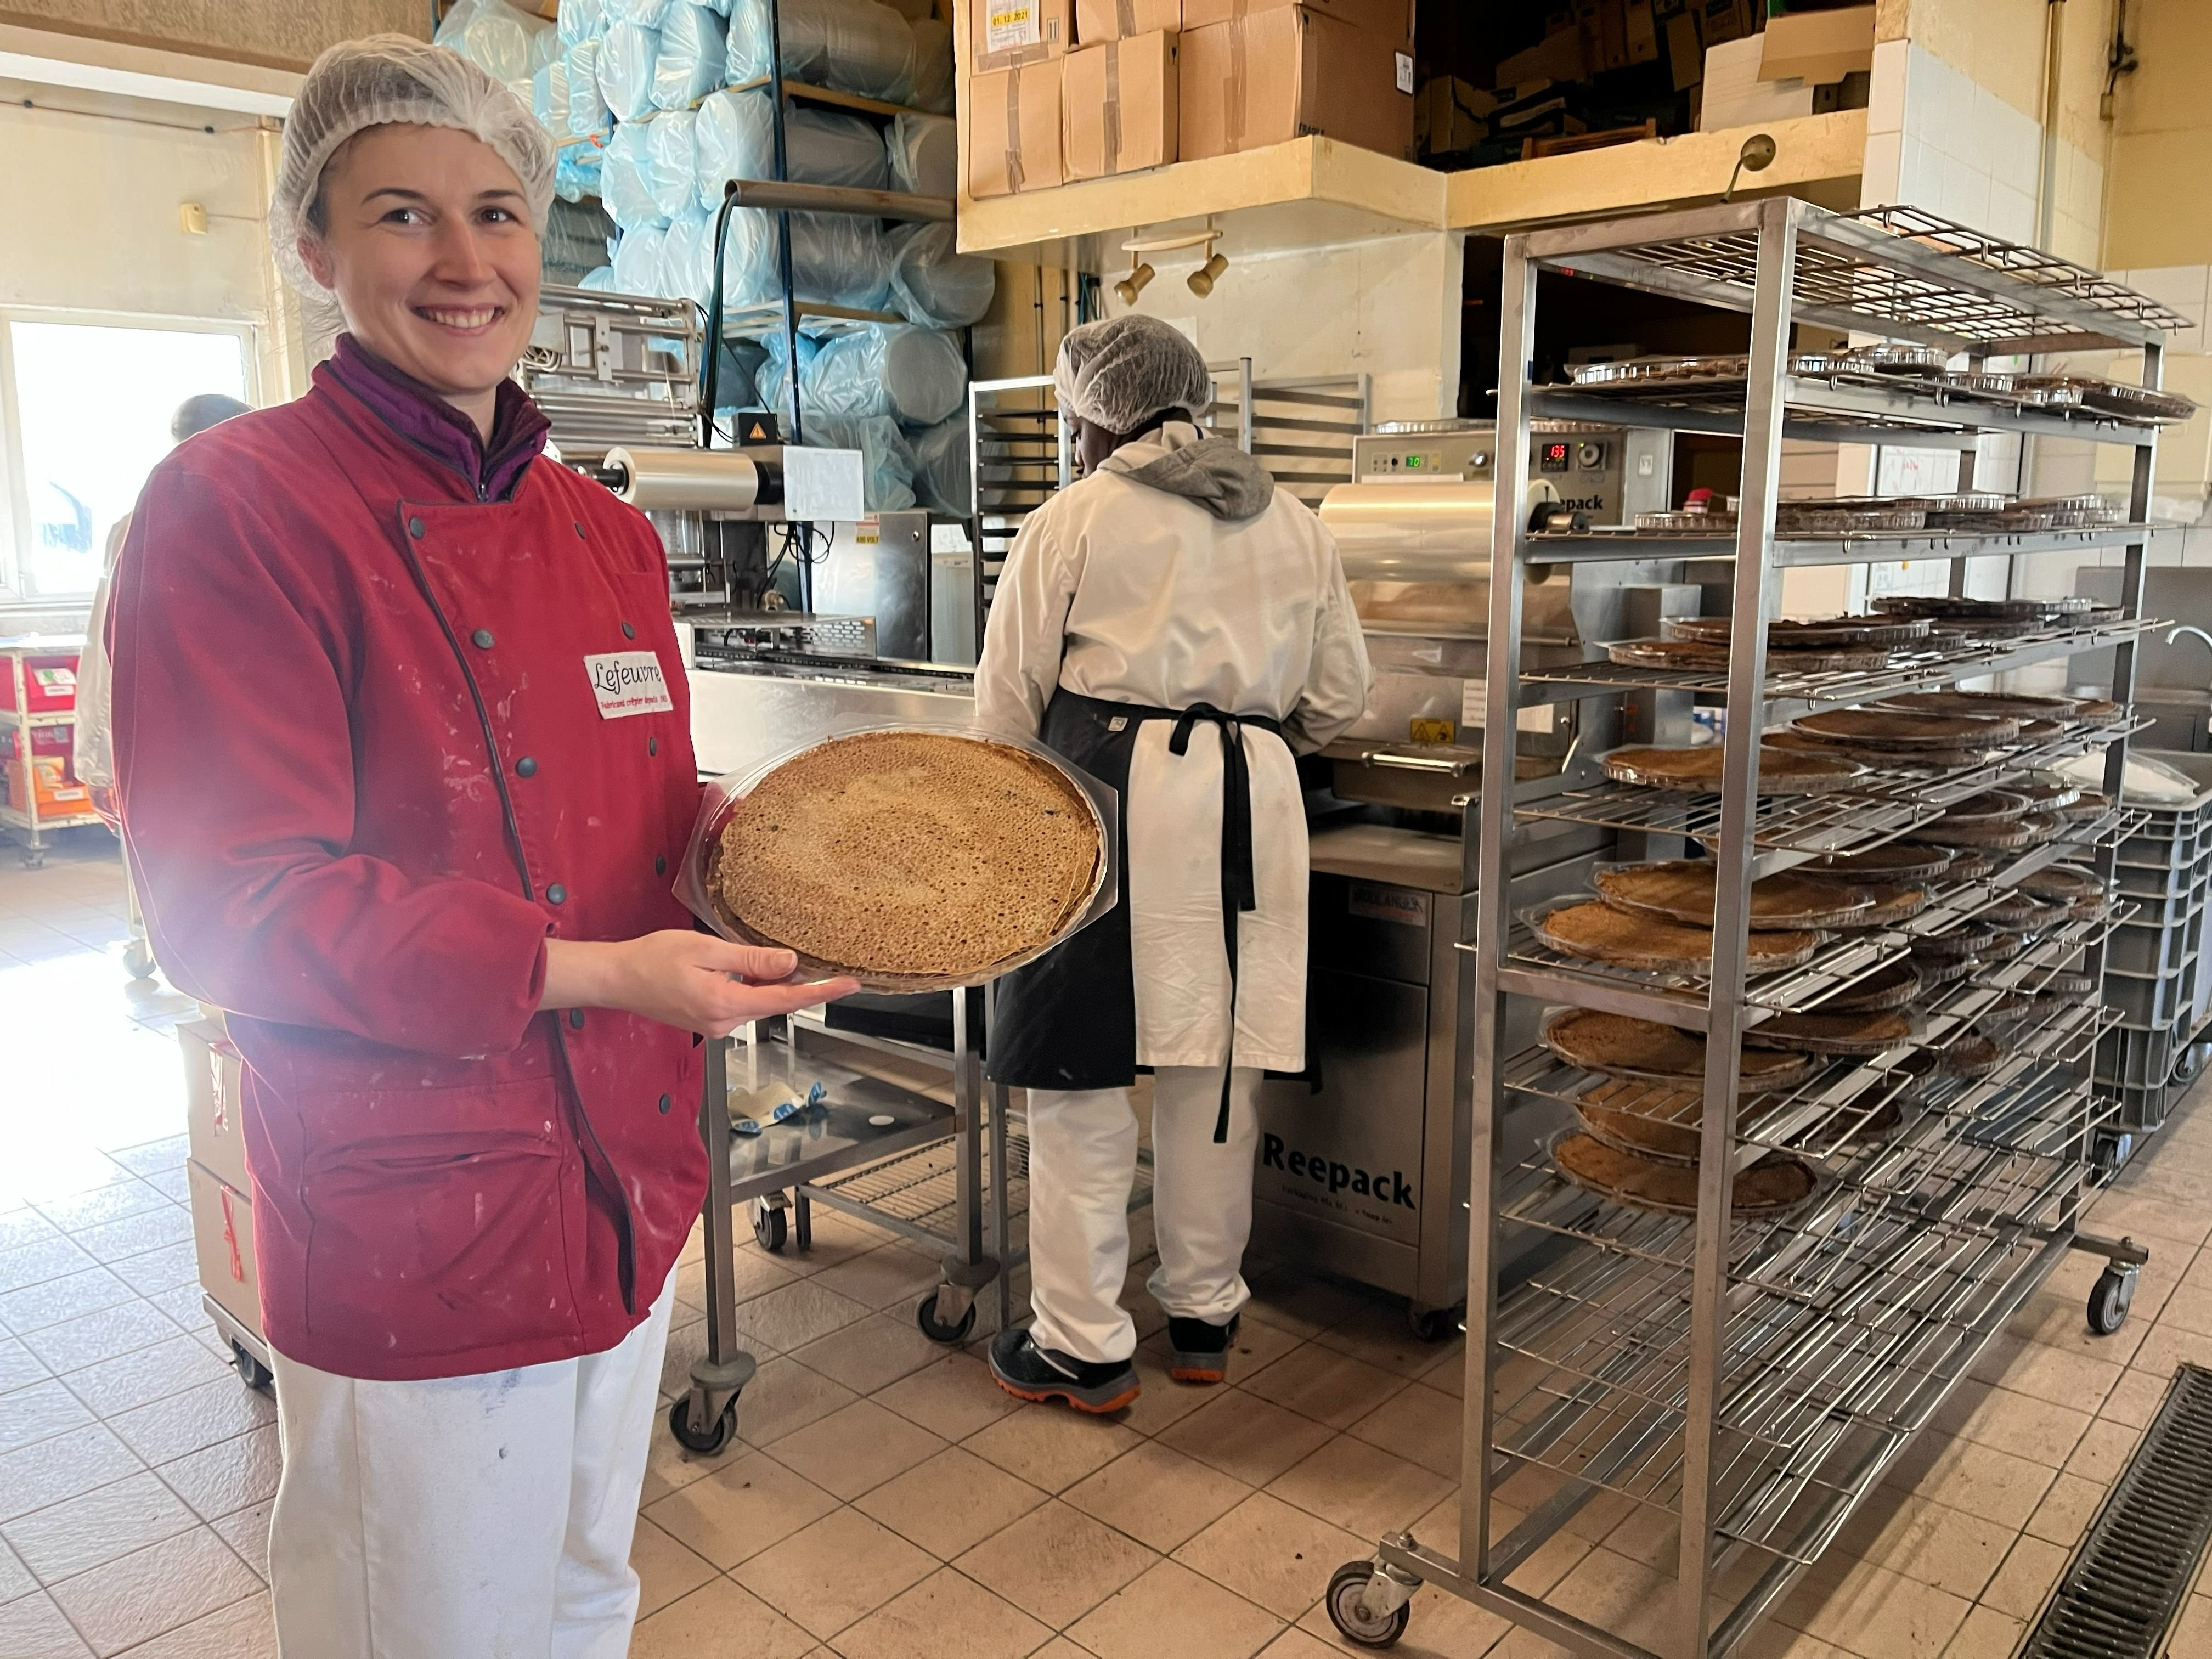 Grigny, mercredi 15 février 2023. L'entreprise Lefeuvre affiche aujourd'hui 1 million d'euros de chiffre d'affaires. Chaque jour, 25 000 crêpes, galettes de sarrasin, blinis et pancakes y sont produits. Ci-dessus, Manon Genest, cheffe de production.